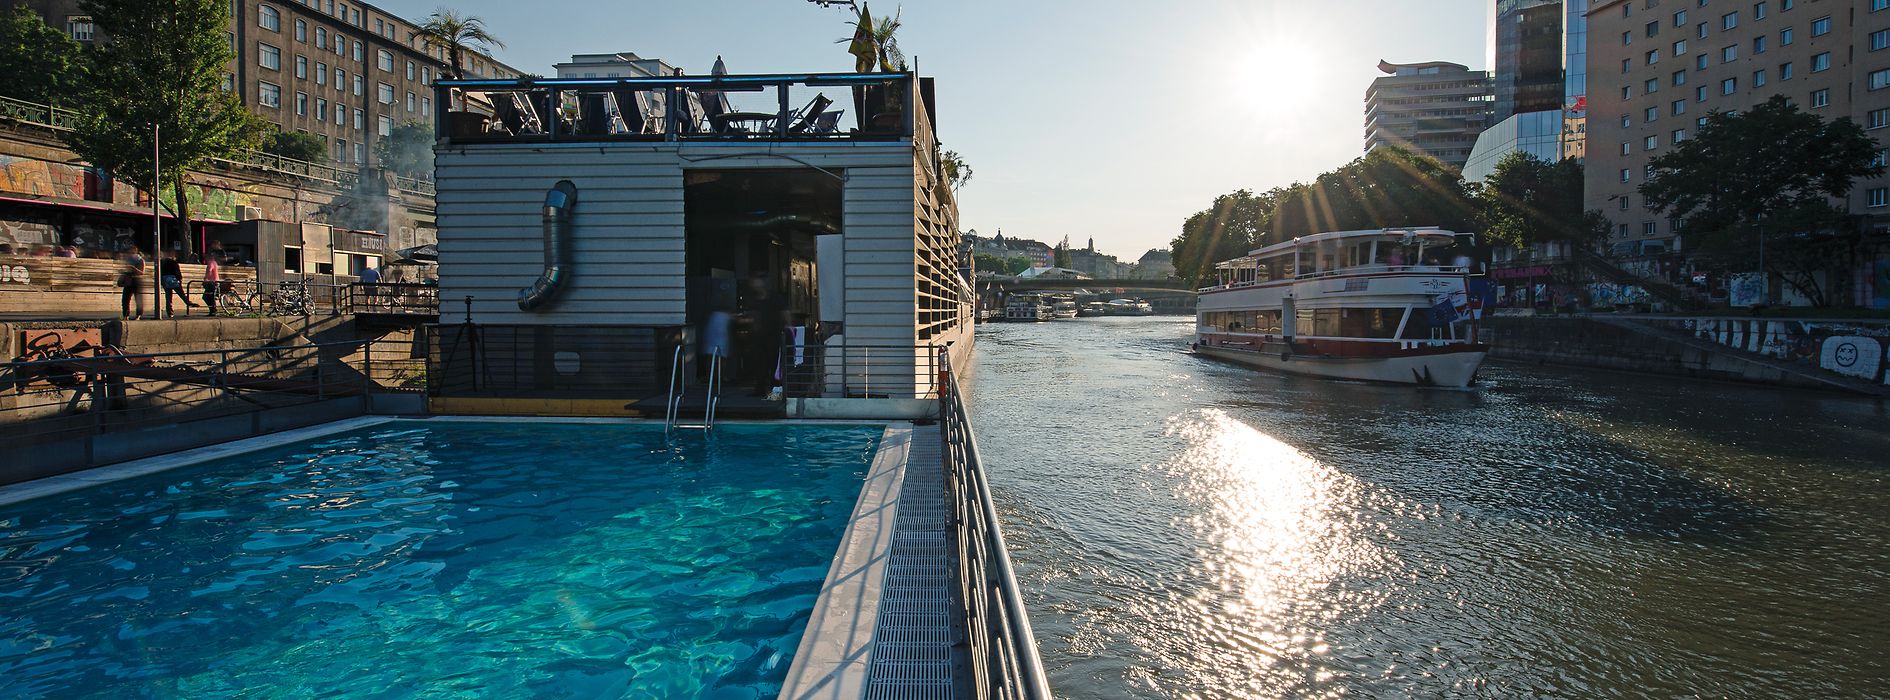 Barco piscina en el canal del Danubio